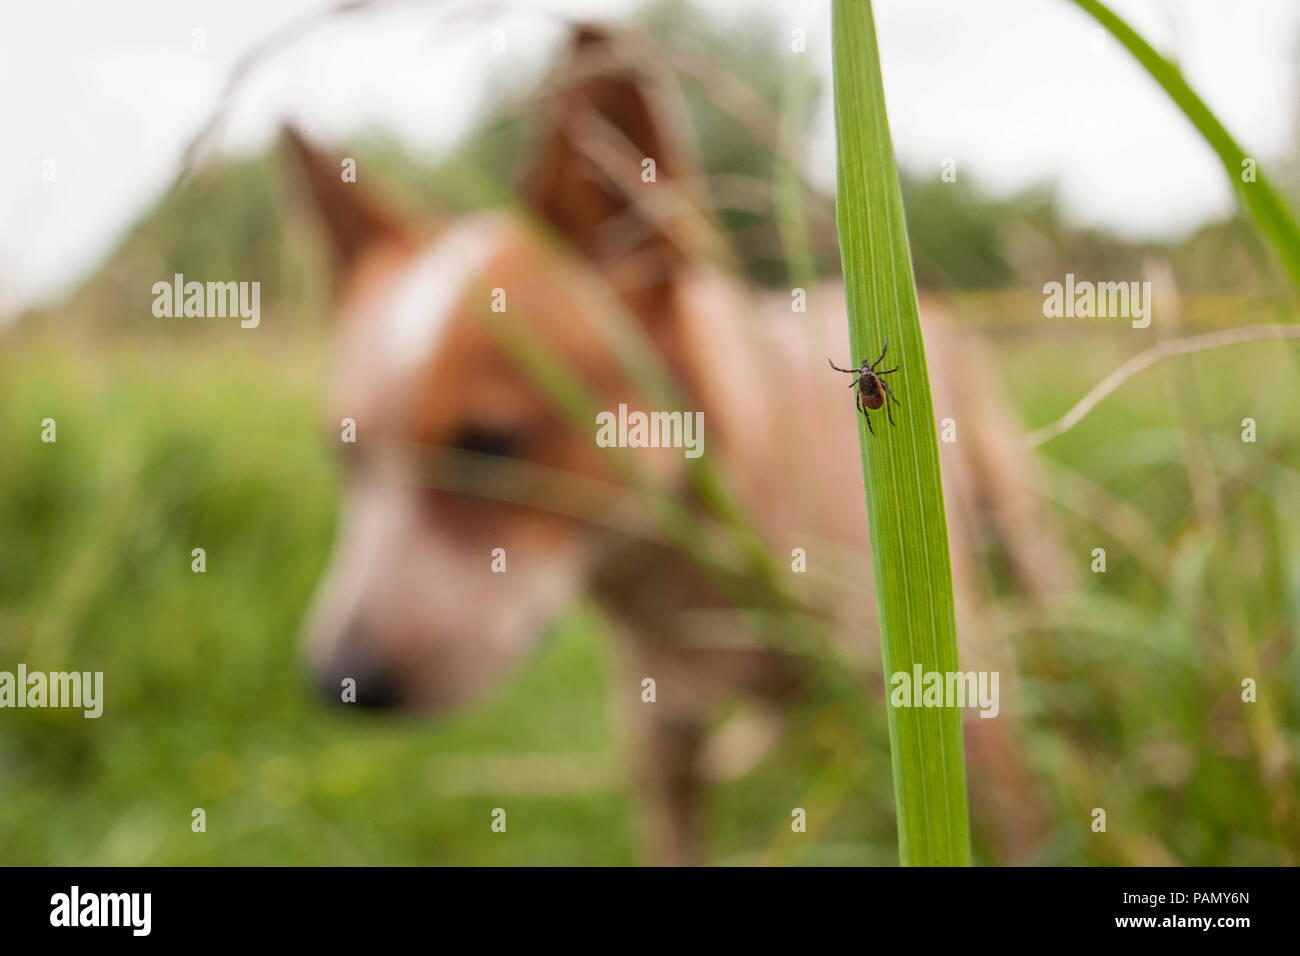 Ricin tique (Ixodes ricinus). Femme sur un brin d'herbe avec Australian Cattle Dog en arrière-plan. Allemagne Banque D'Images